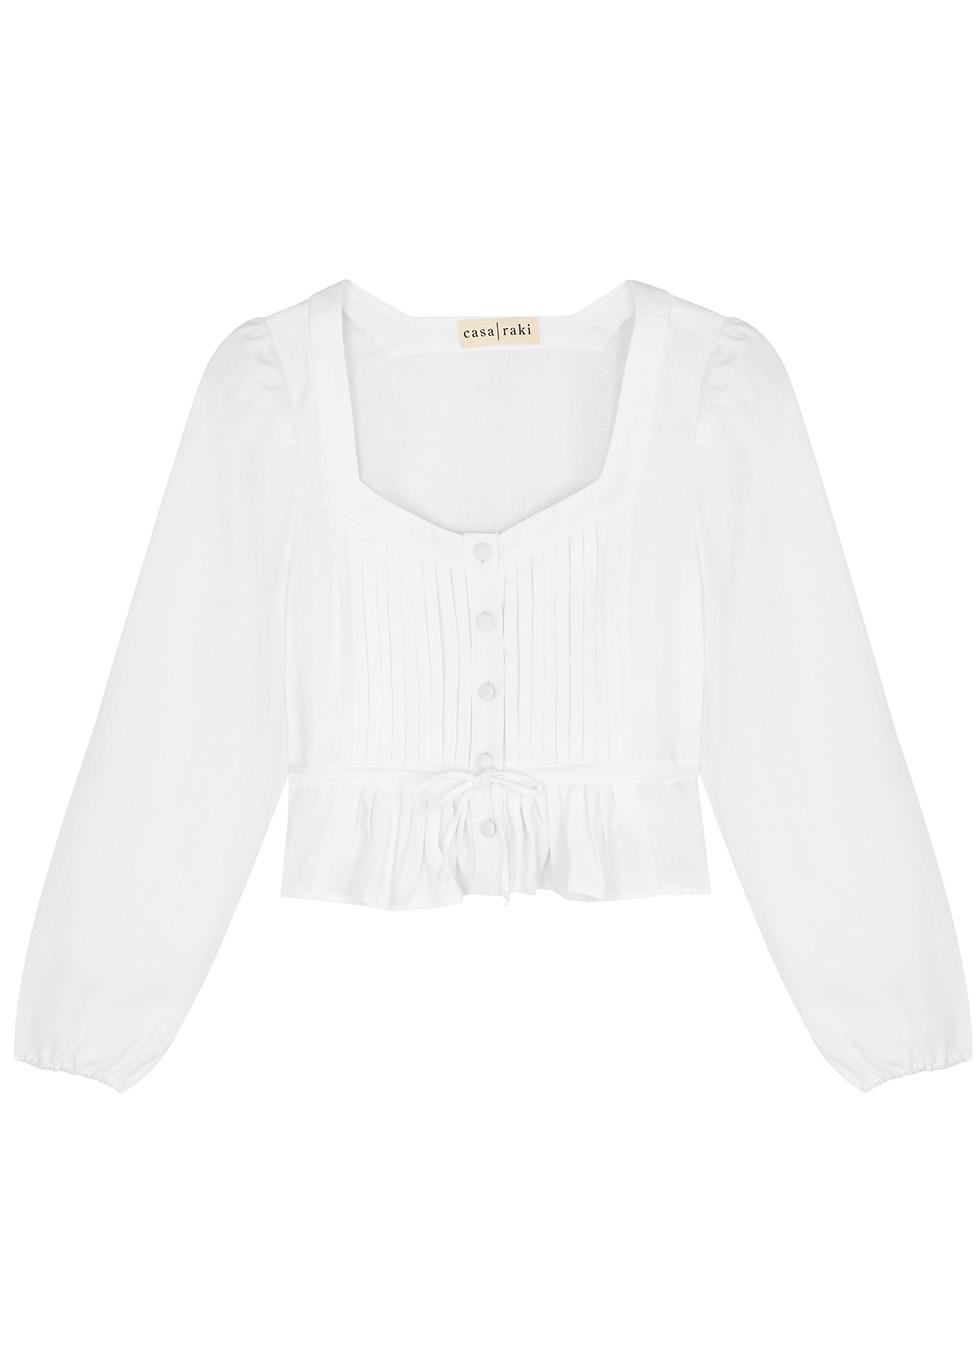 Fini white linen blouse by CASA RAKI